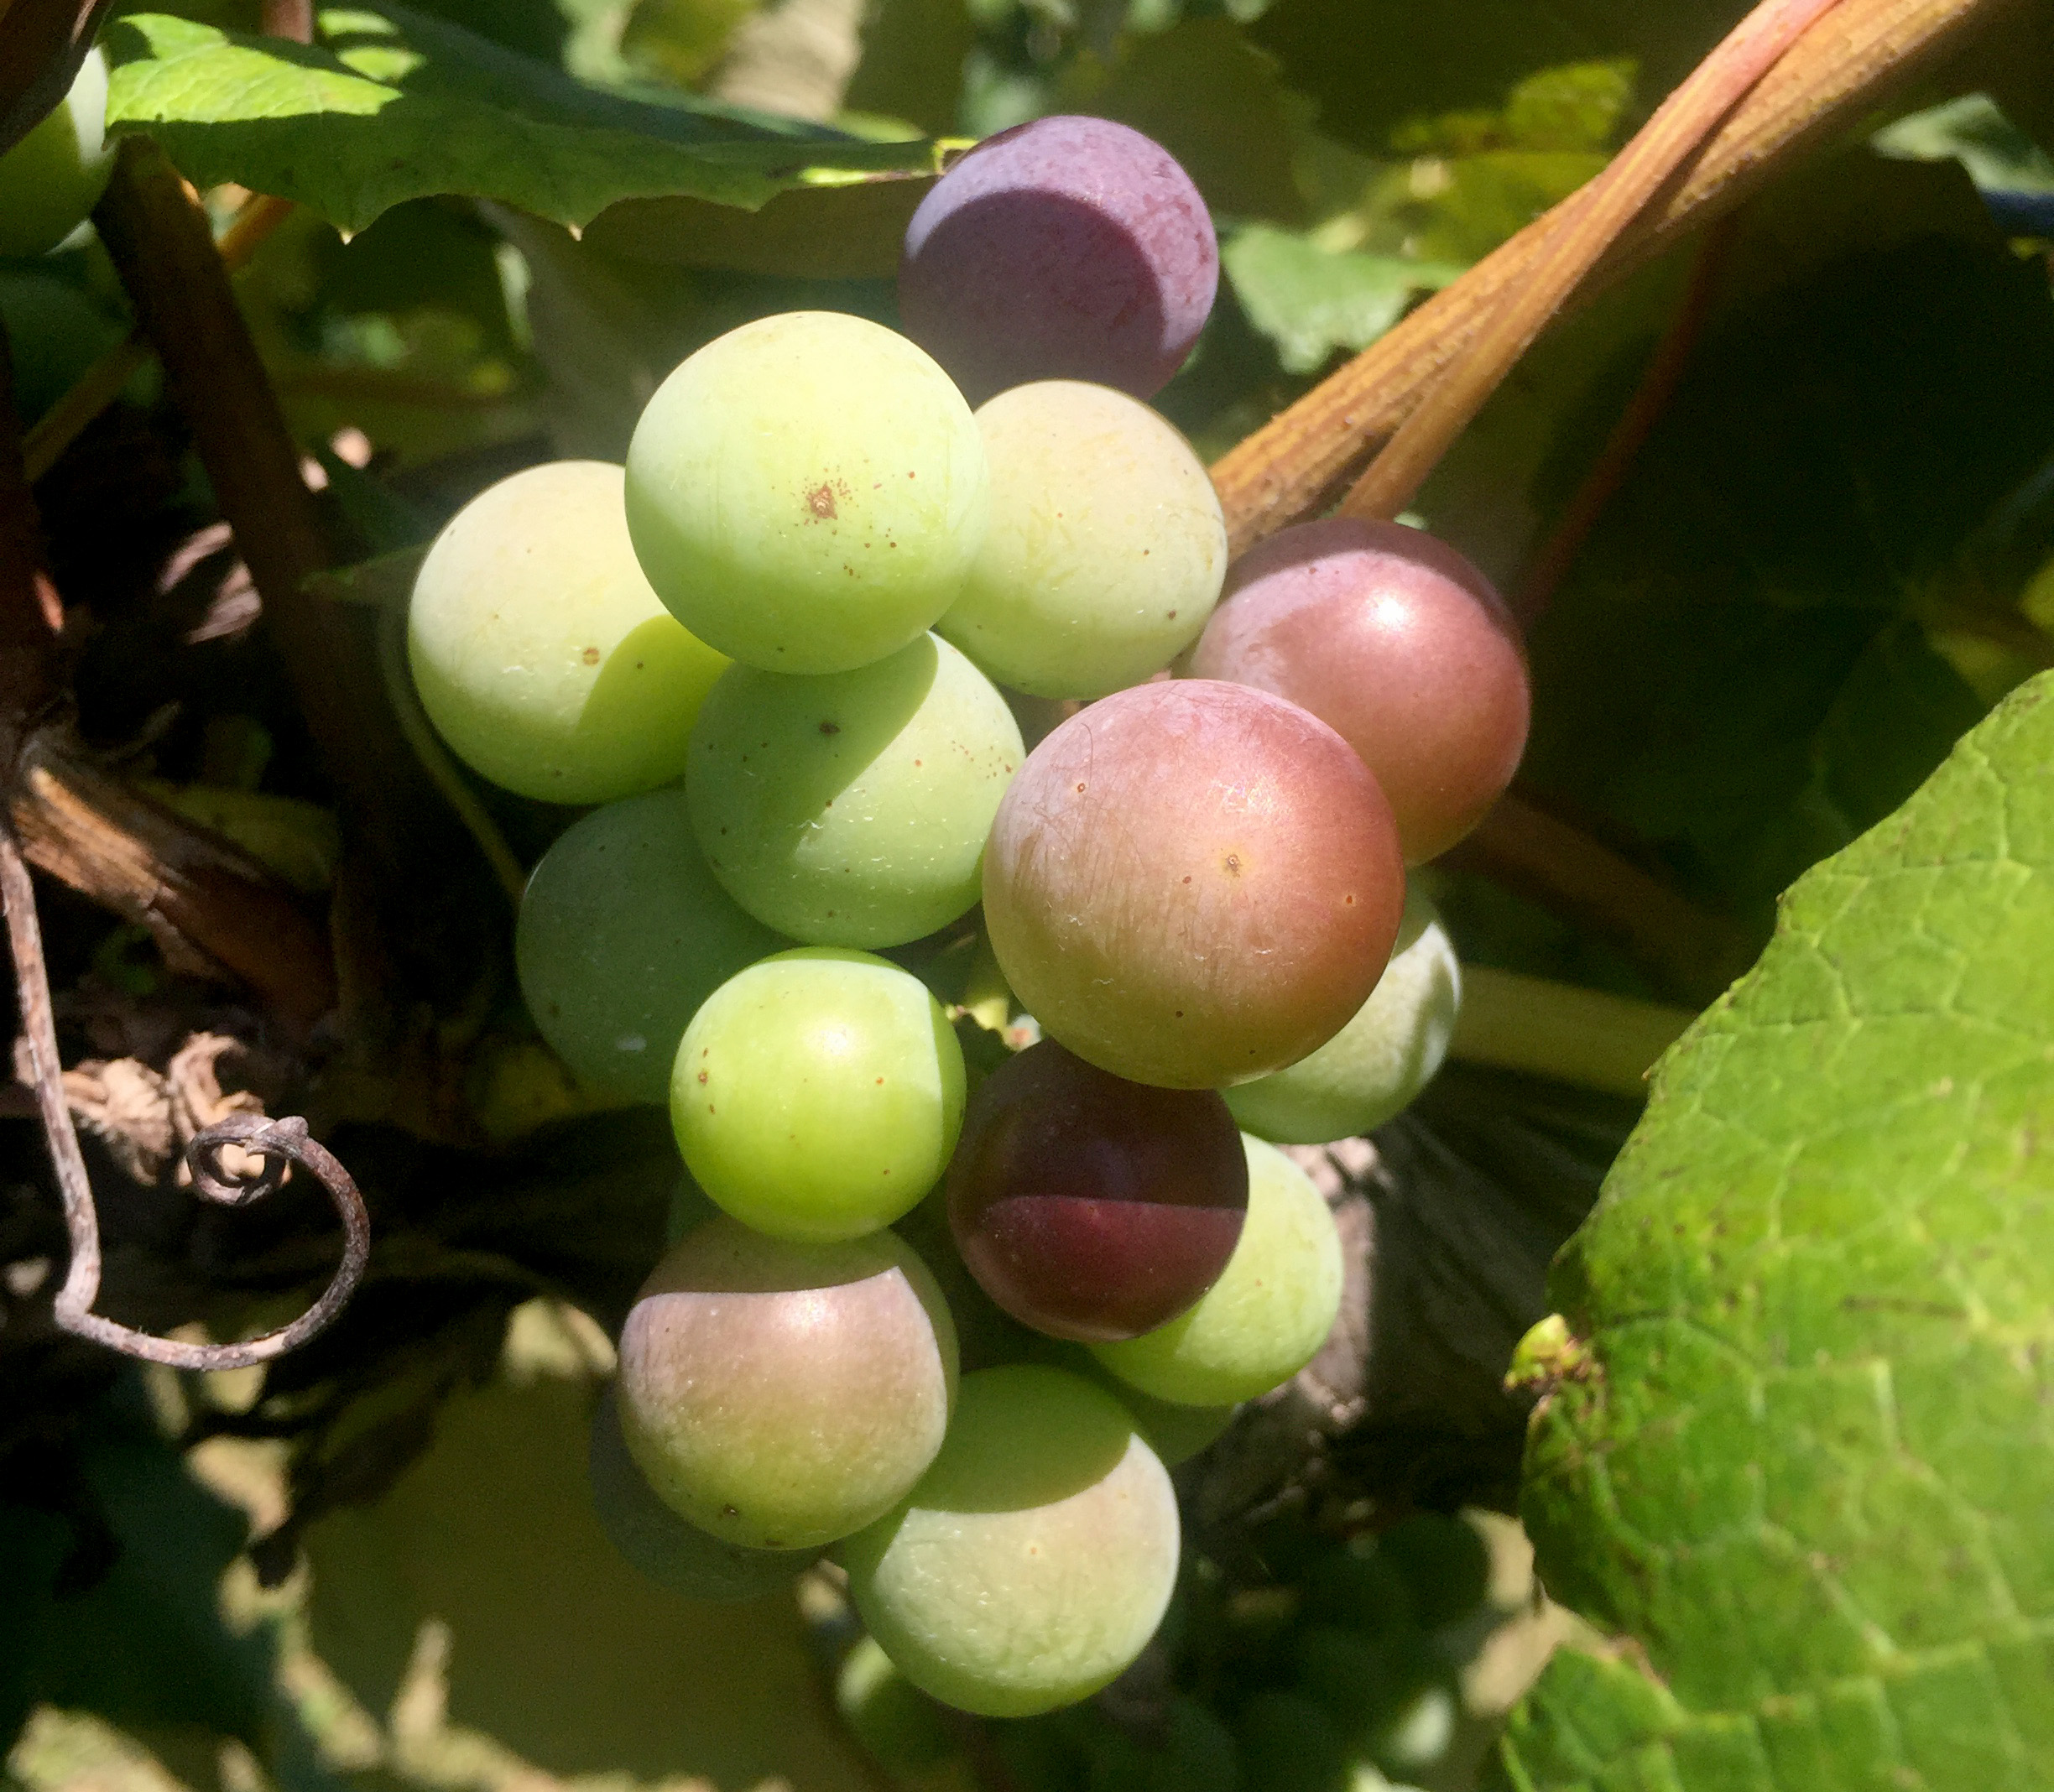 Concorn grapes